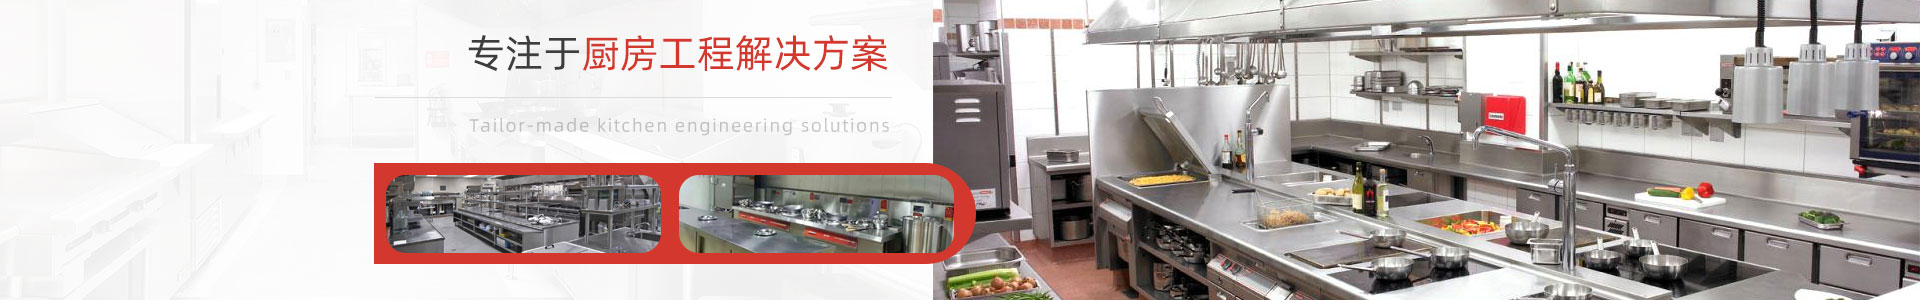 深圳市宏润厨房设备有(yǒu)限公司-炉具厨房设备